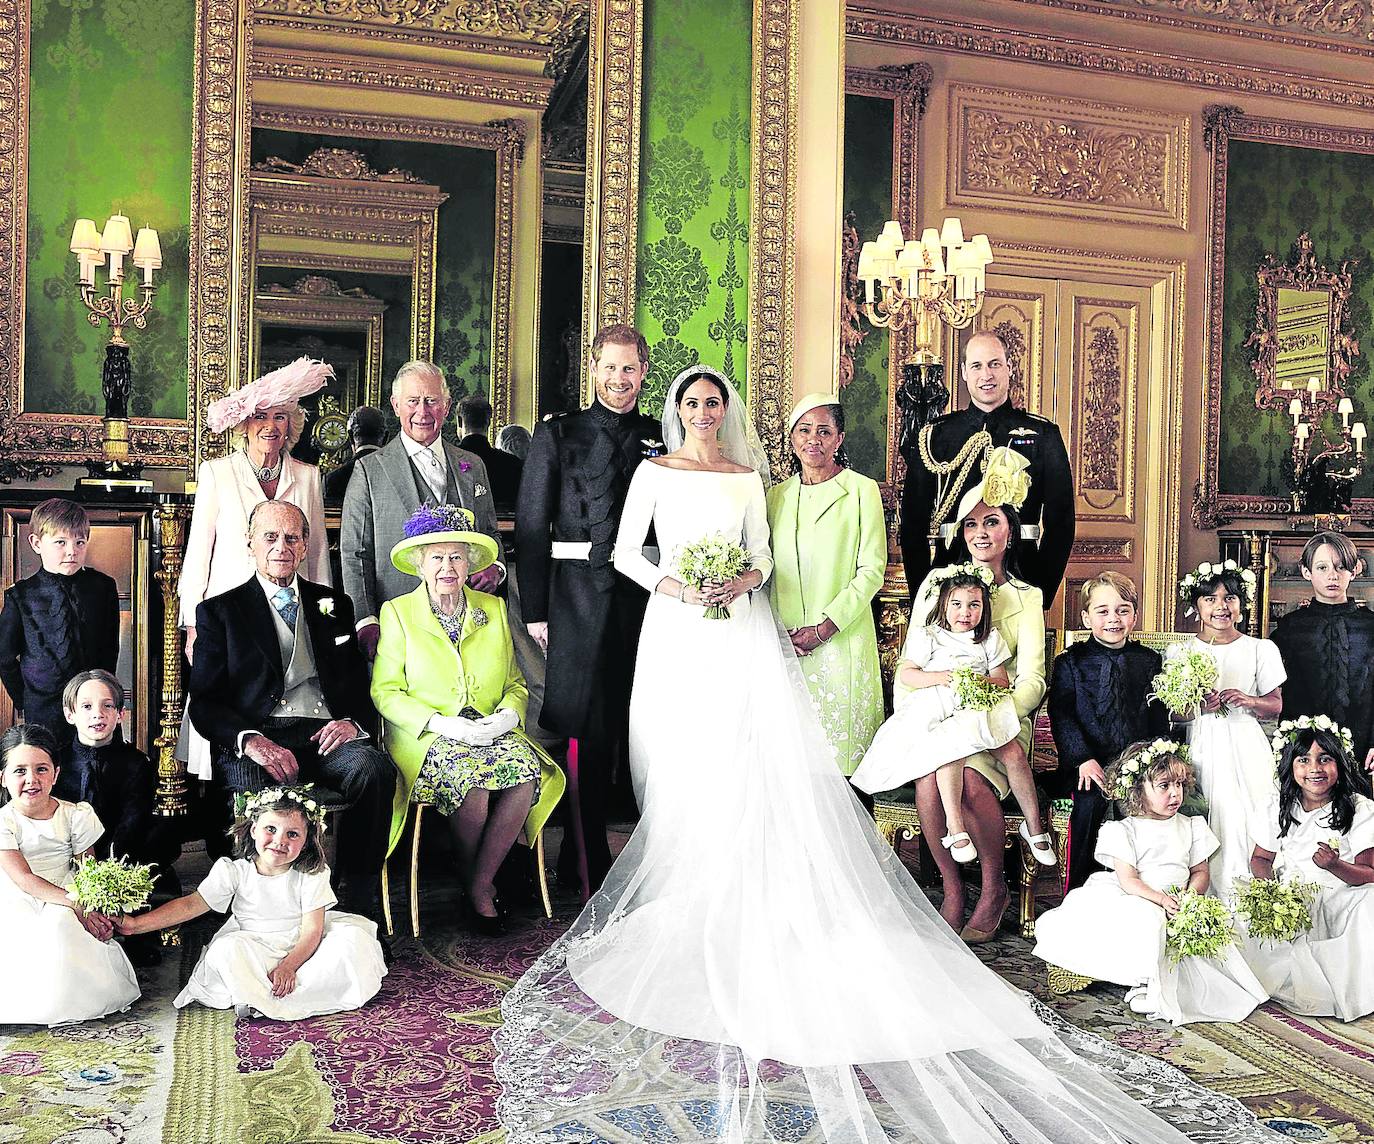 Fotografía oficial de la familia real británica tomada tras la boda de Meghan Markle y el príncipe Enrique.